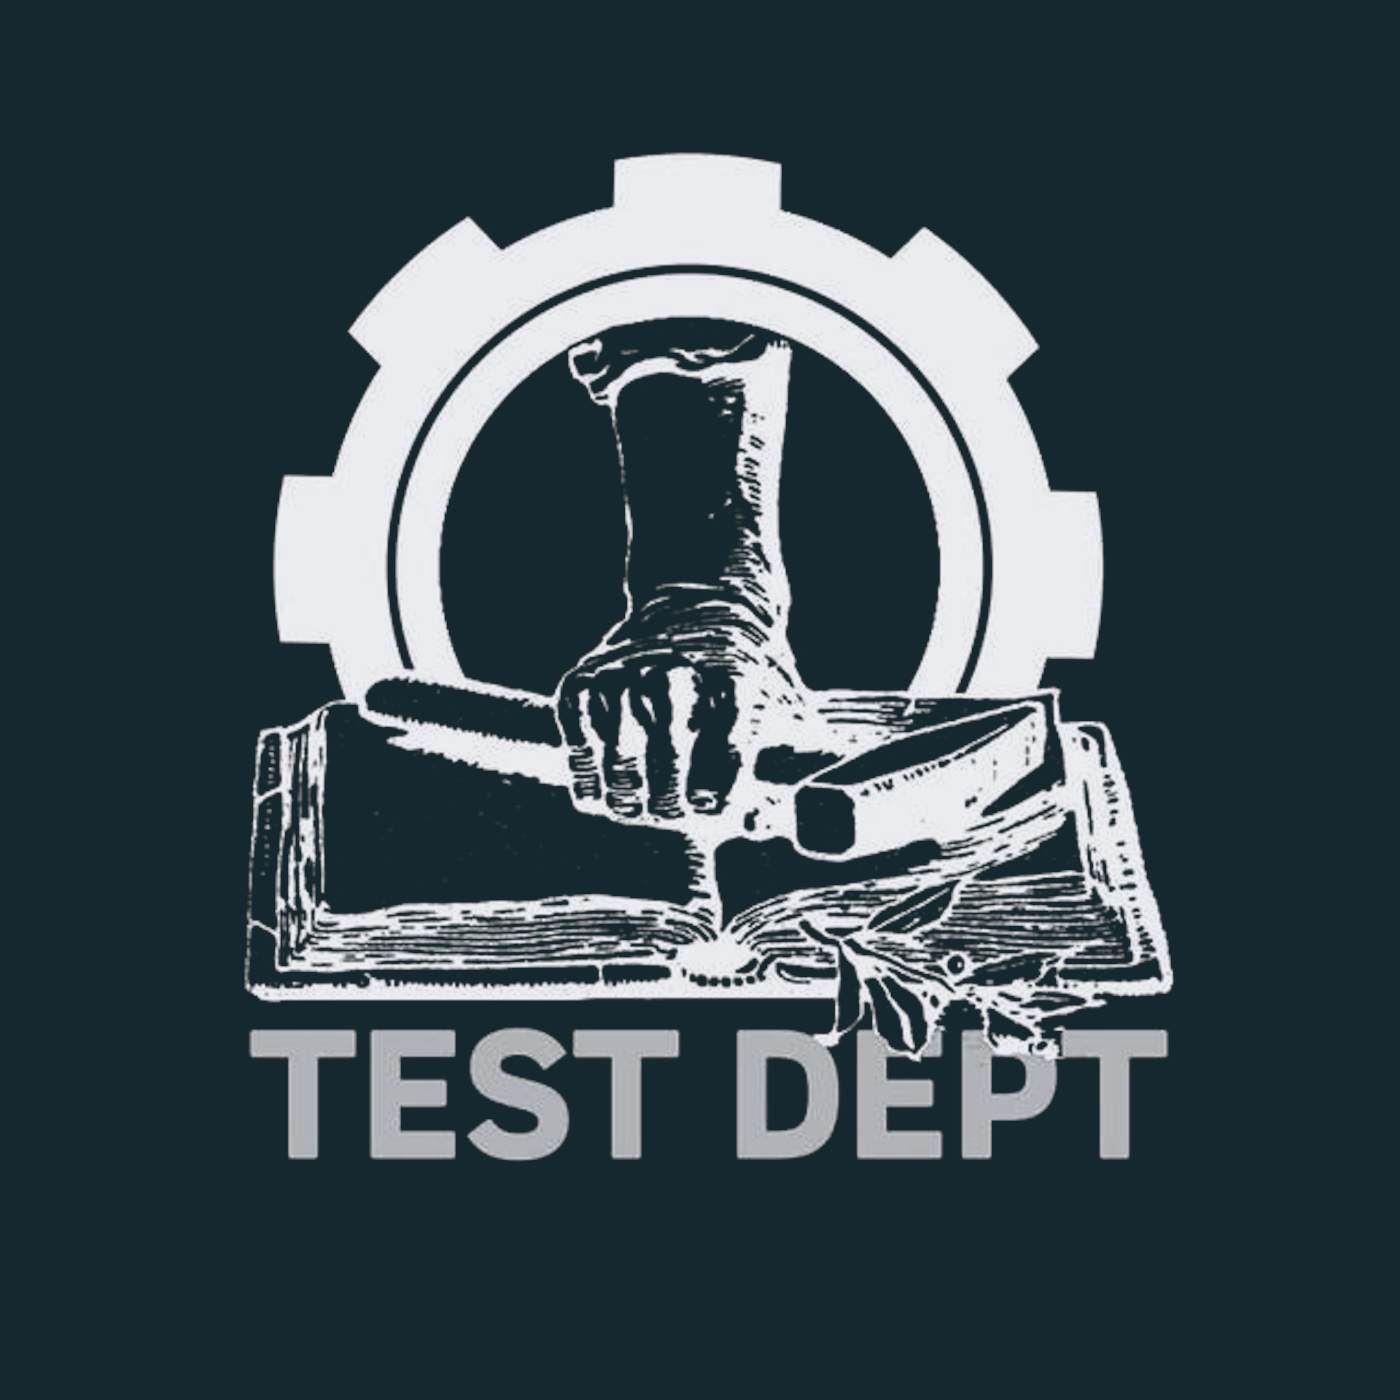 Test Dept